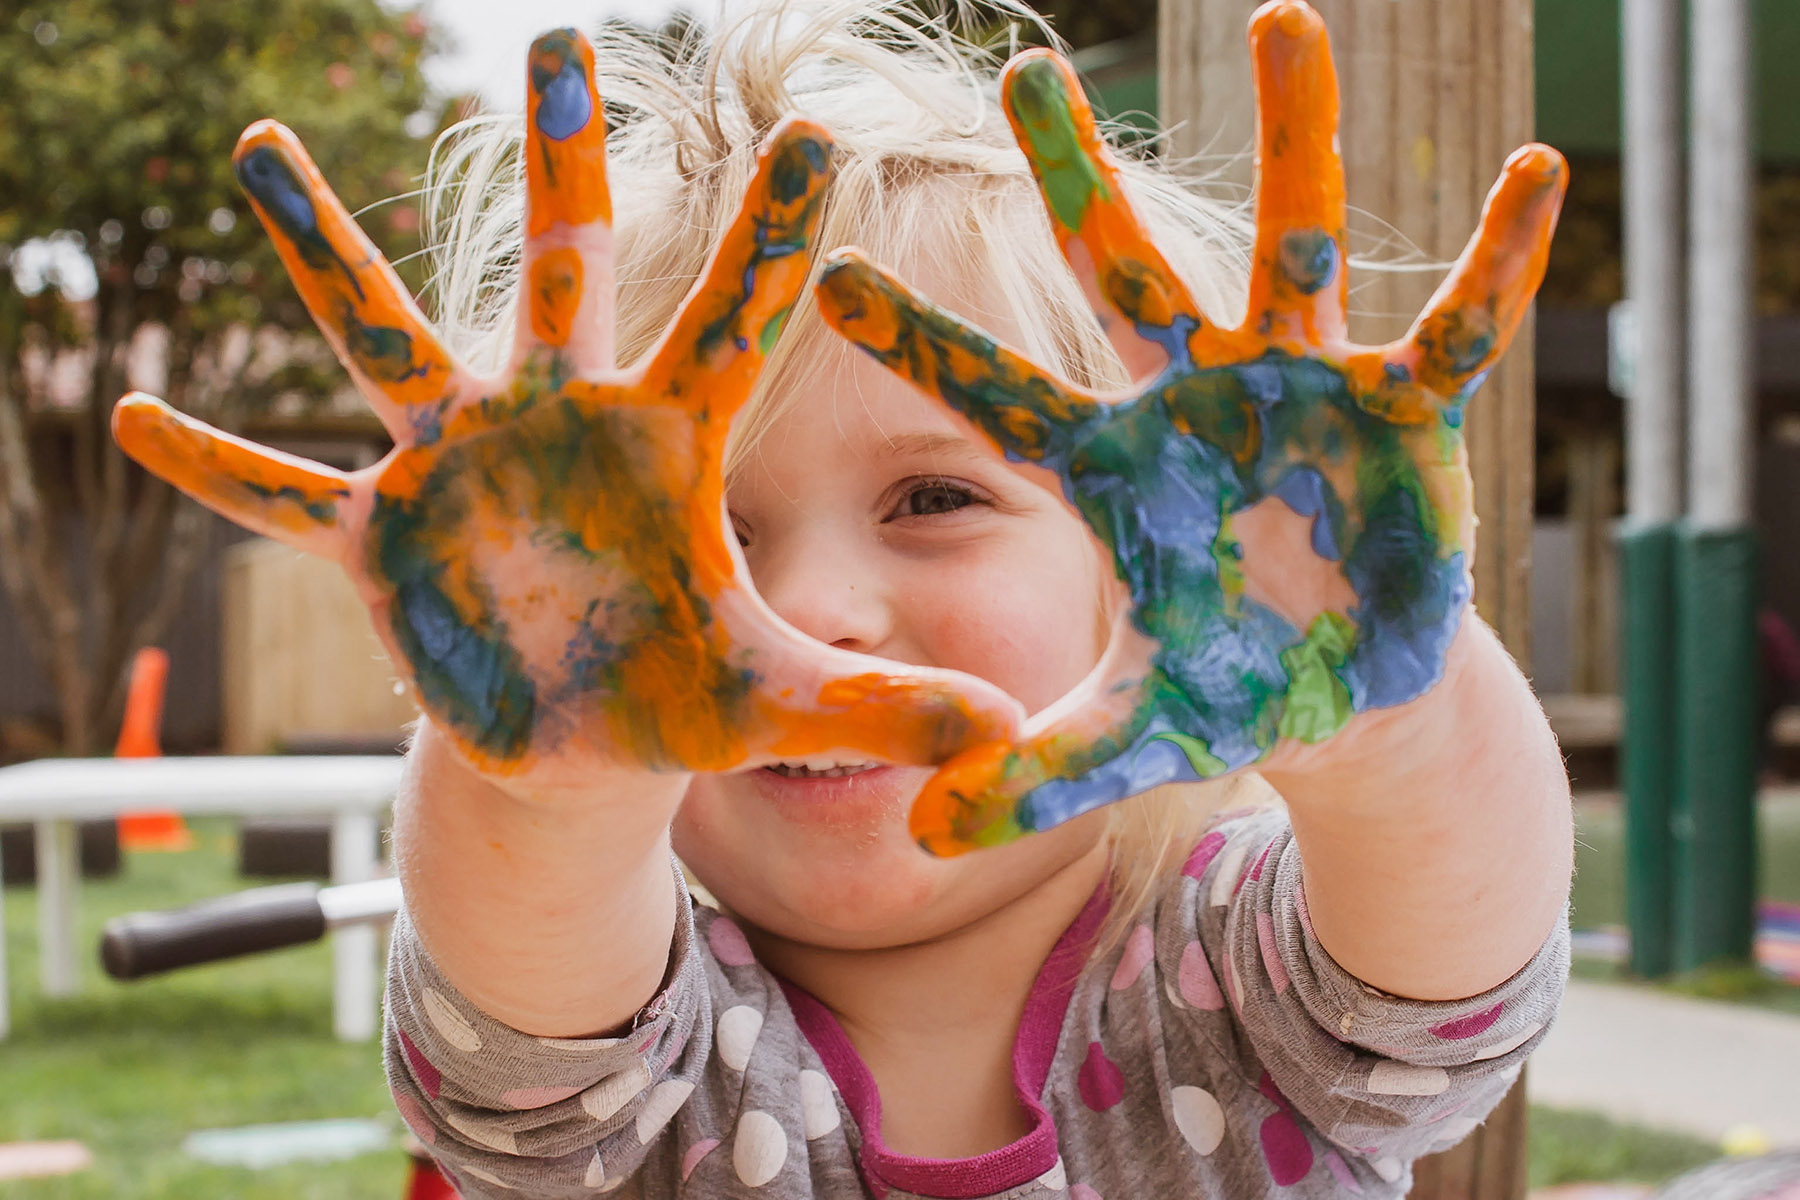 Ein lächelndes kleines Mädchen zeigt stolz seine bunten Hände, die mit Fingerfarbe bepinselt wurden.